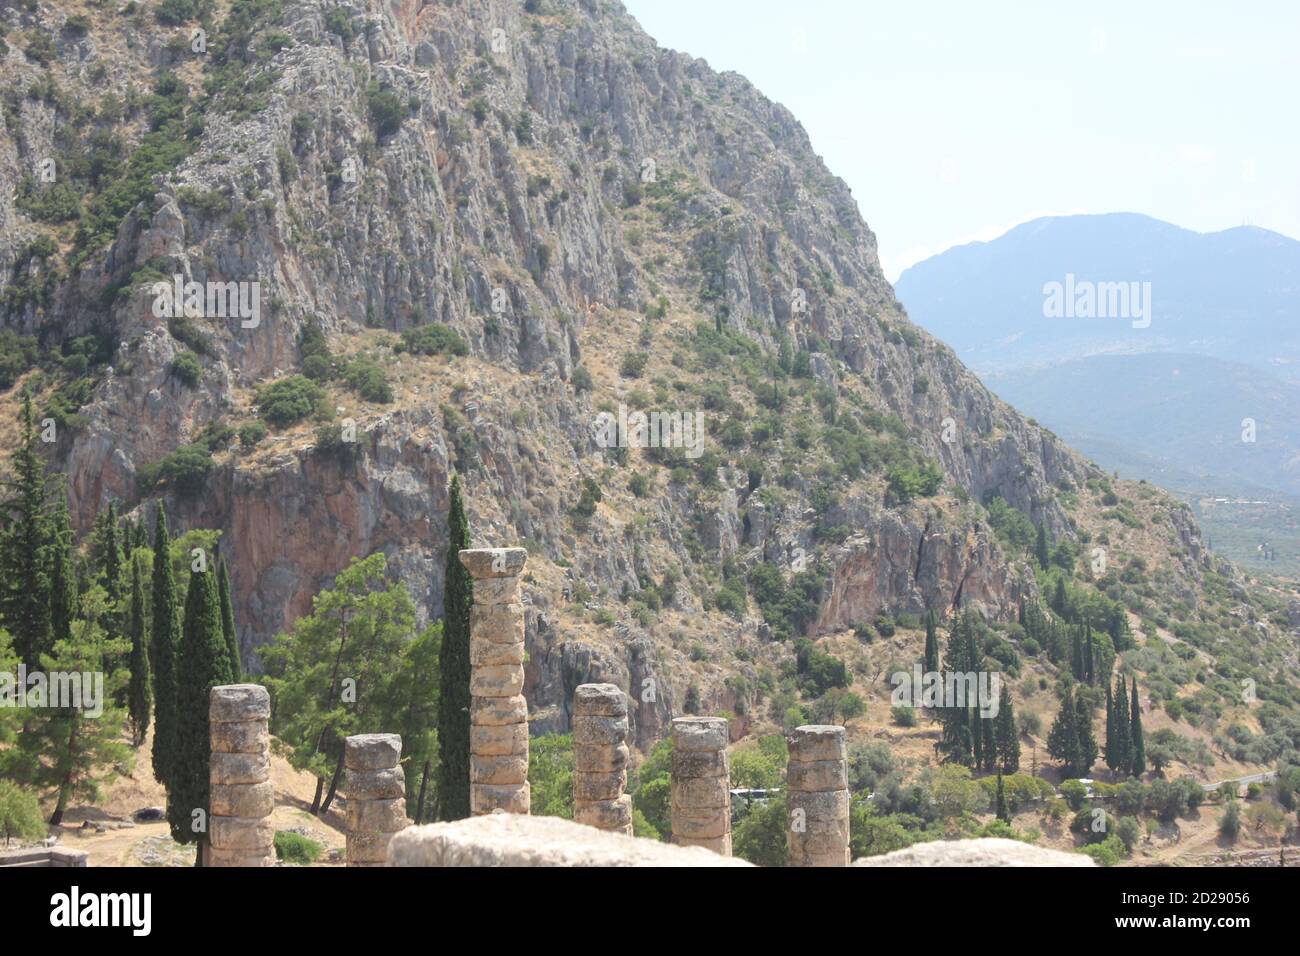 Vue sur le site archéologique de Delphes en Grèce Banque D'Images